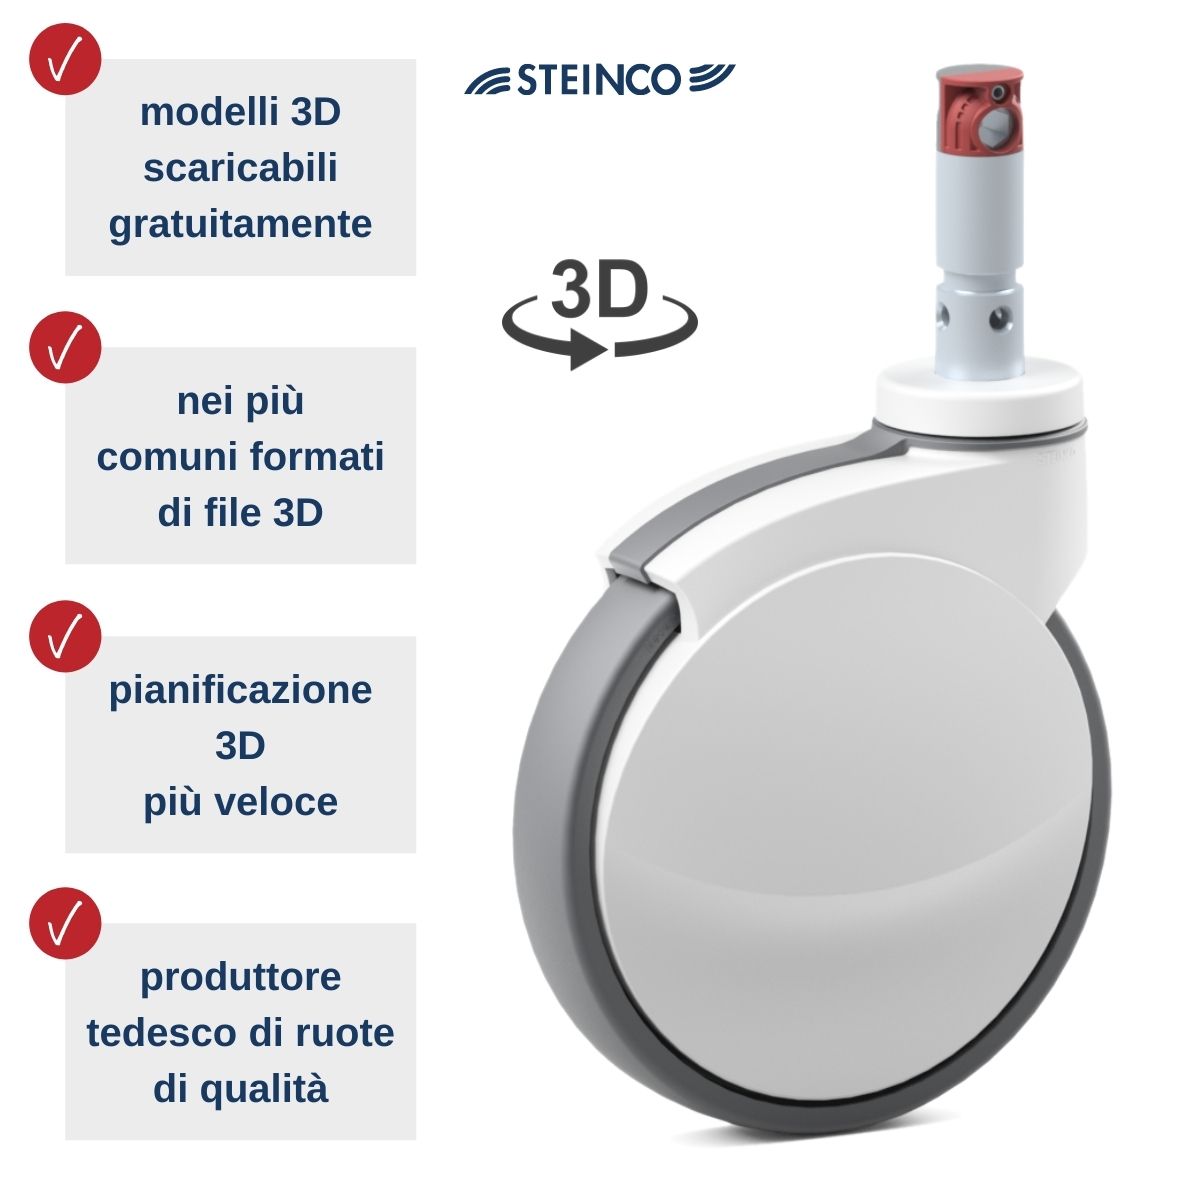 Ruote Steinco Medical - modelli 3D gratuiti in diversi formati di file per progettisti, costruttori e disegnatori tecnici